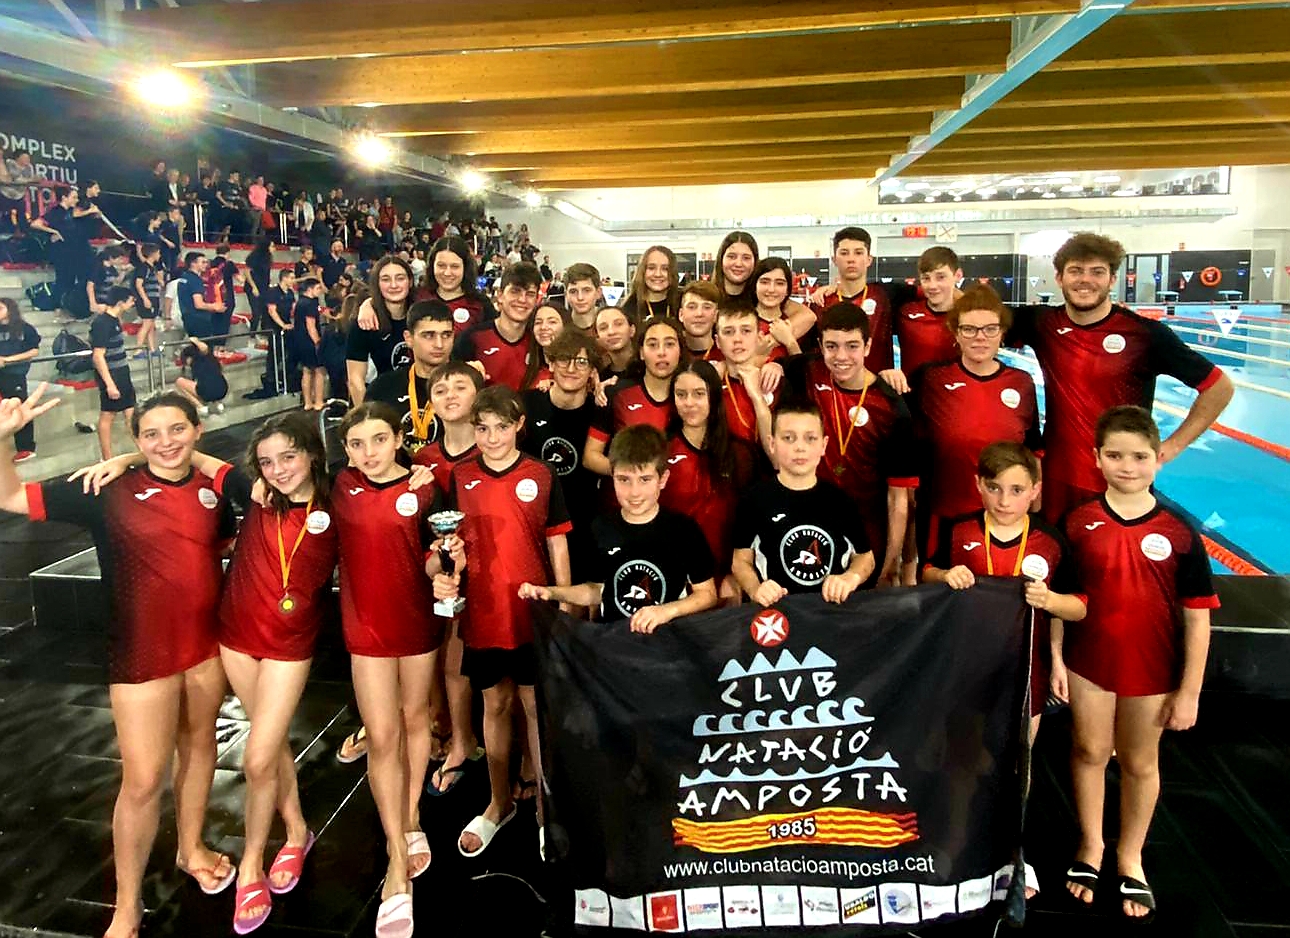 NOTÍCIA: CANAL 21 EBRE, Campionat Provincial de Natació Delegació Tarragona 2020 al Win Tortosa